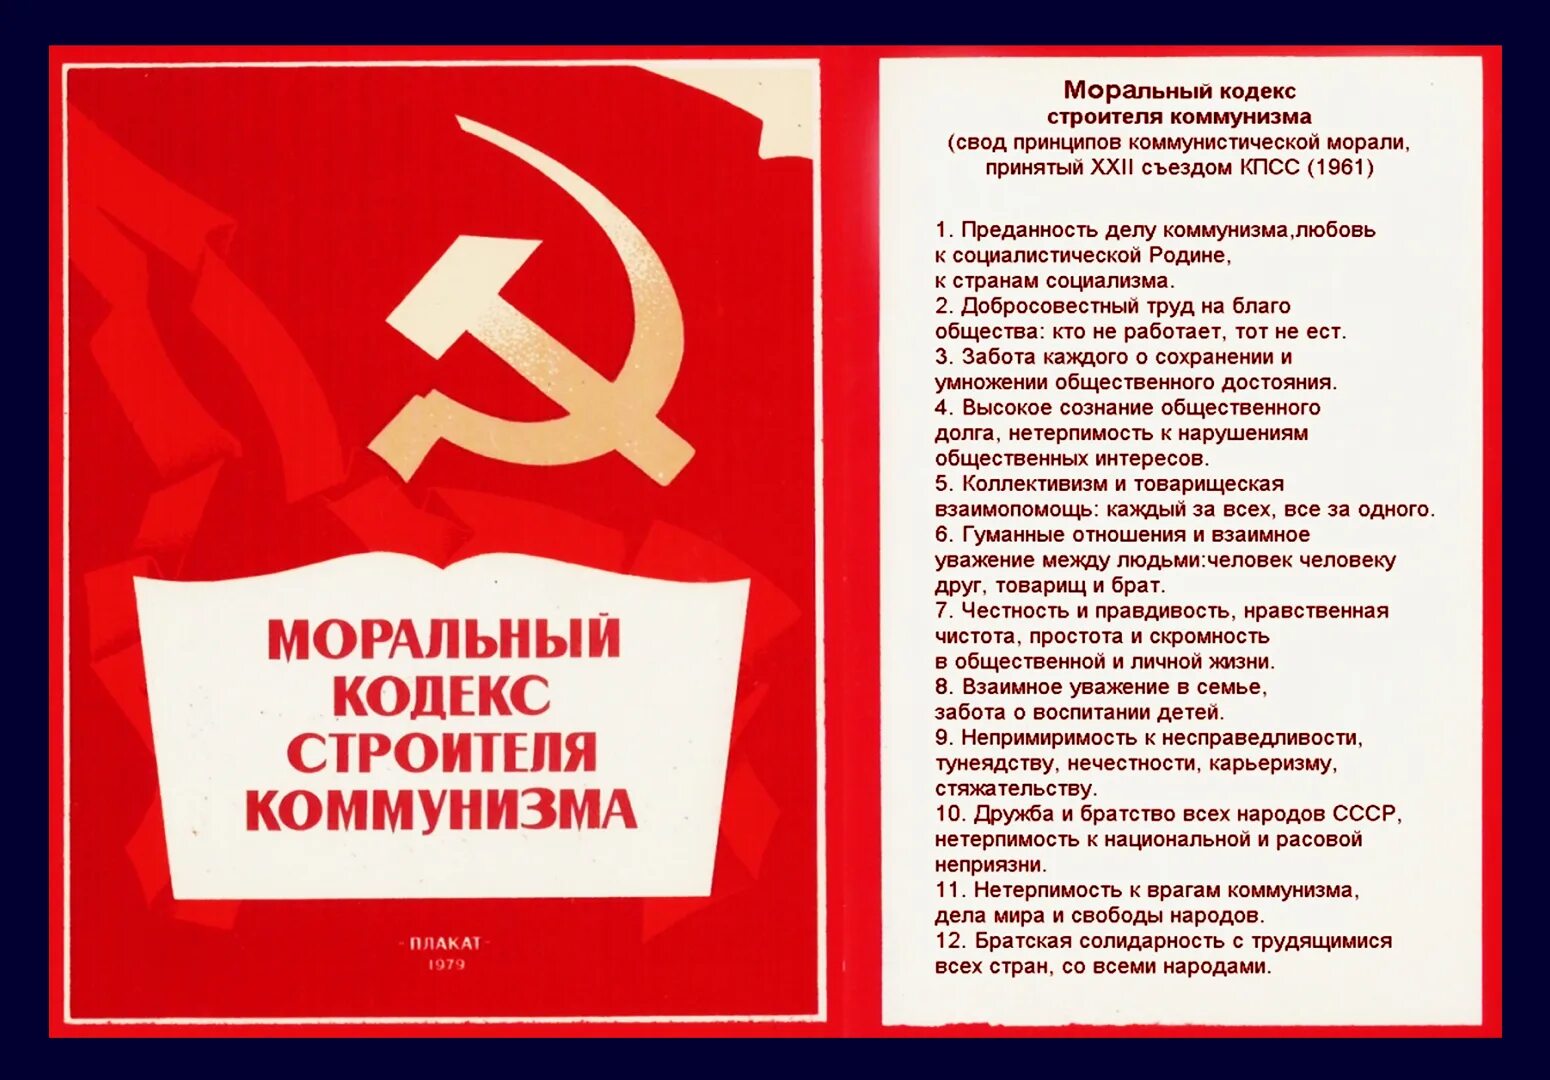 Моральный кодекс строителя коммунизма. Моральный кодекс строителя коммунизма 1961. Кодекс строителя коммунизма. Моральный кодекс строителя коммунизма плакат. Уважение товарищ